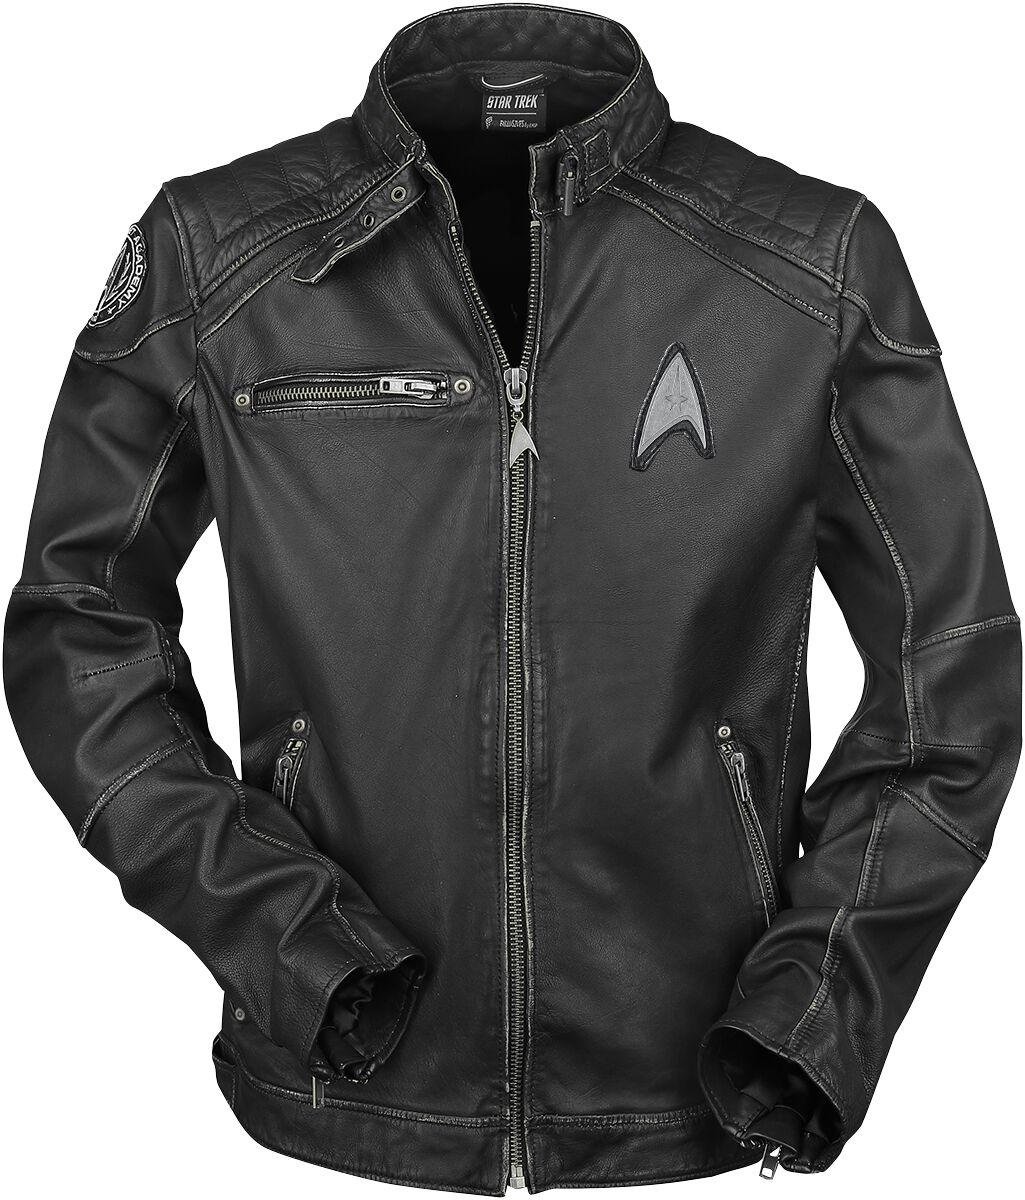 Star Trek Lederjacke - Starship - S bis 3XL - für Männer - Größe XL - schwarz  - EMP exklusives Merchandise! von Star Trek